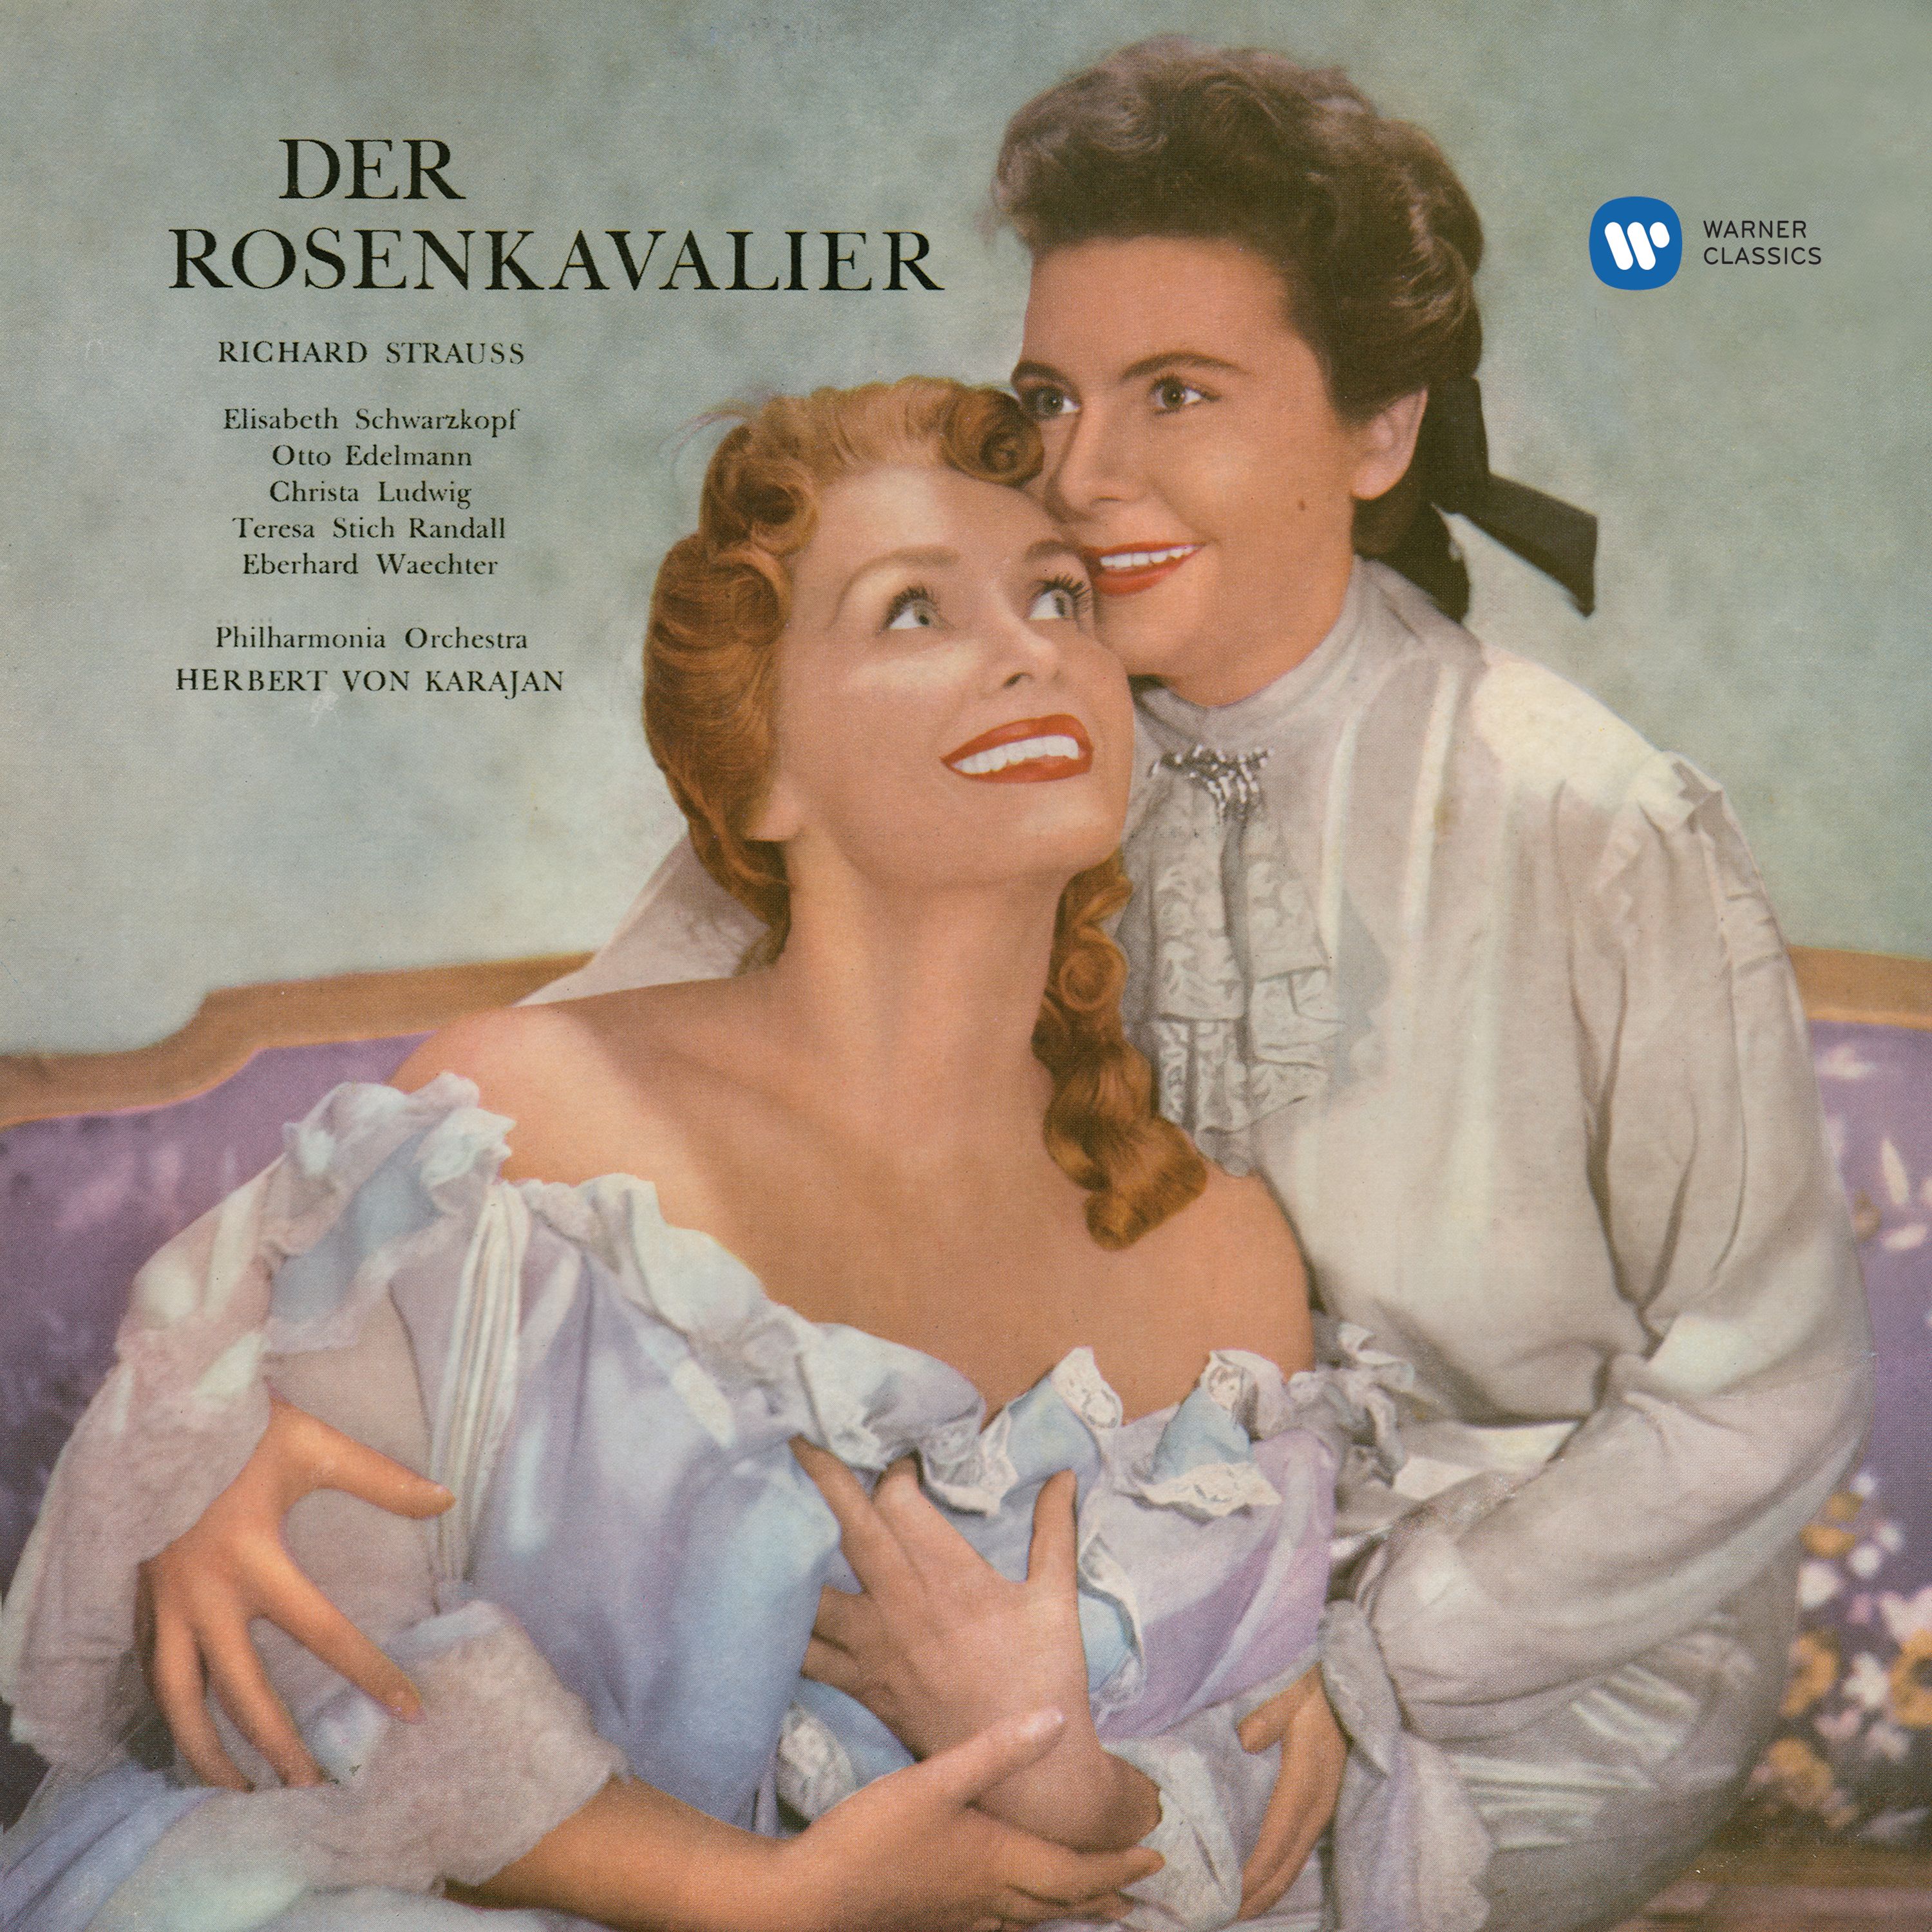 Der Rosenkavalier, Op. 59, Act 1: "Di rigori armato il seno" (Singer)